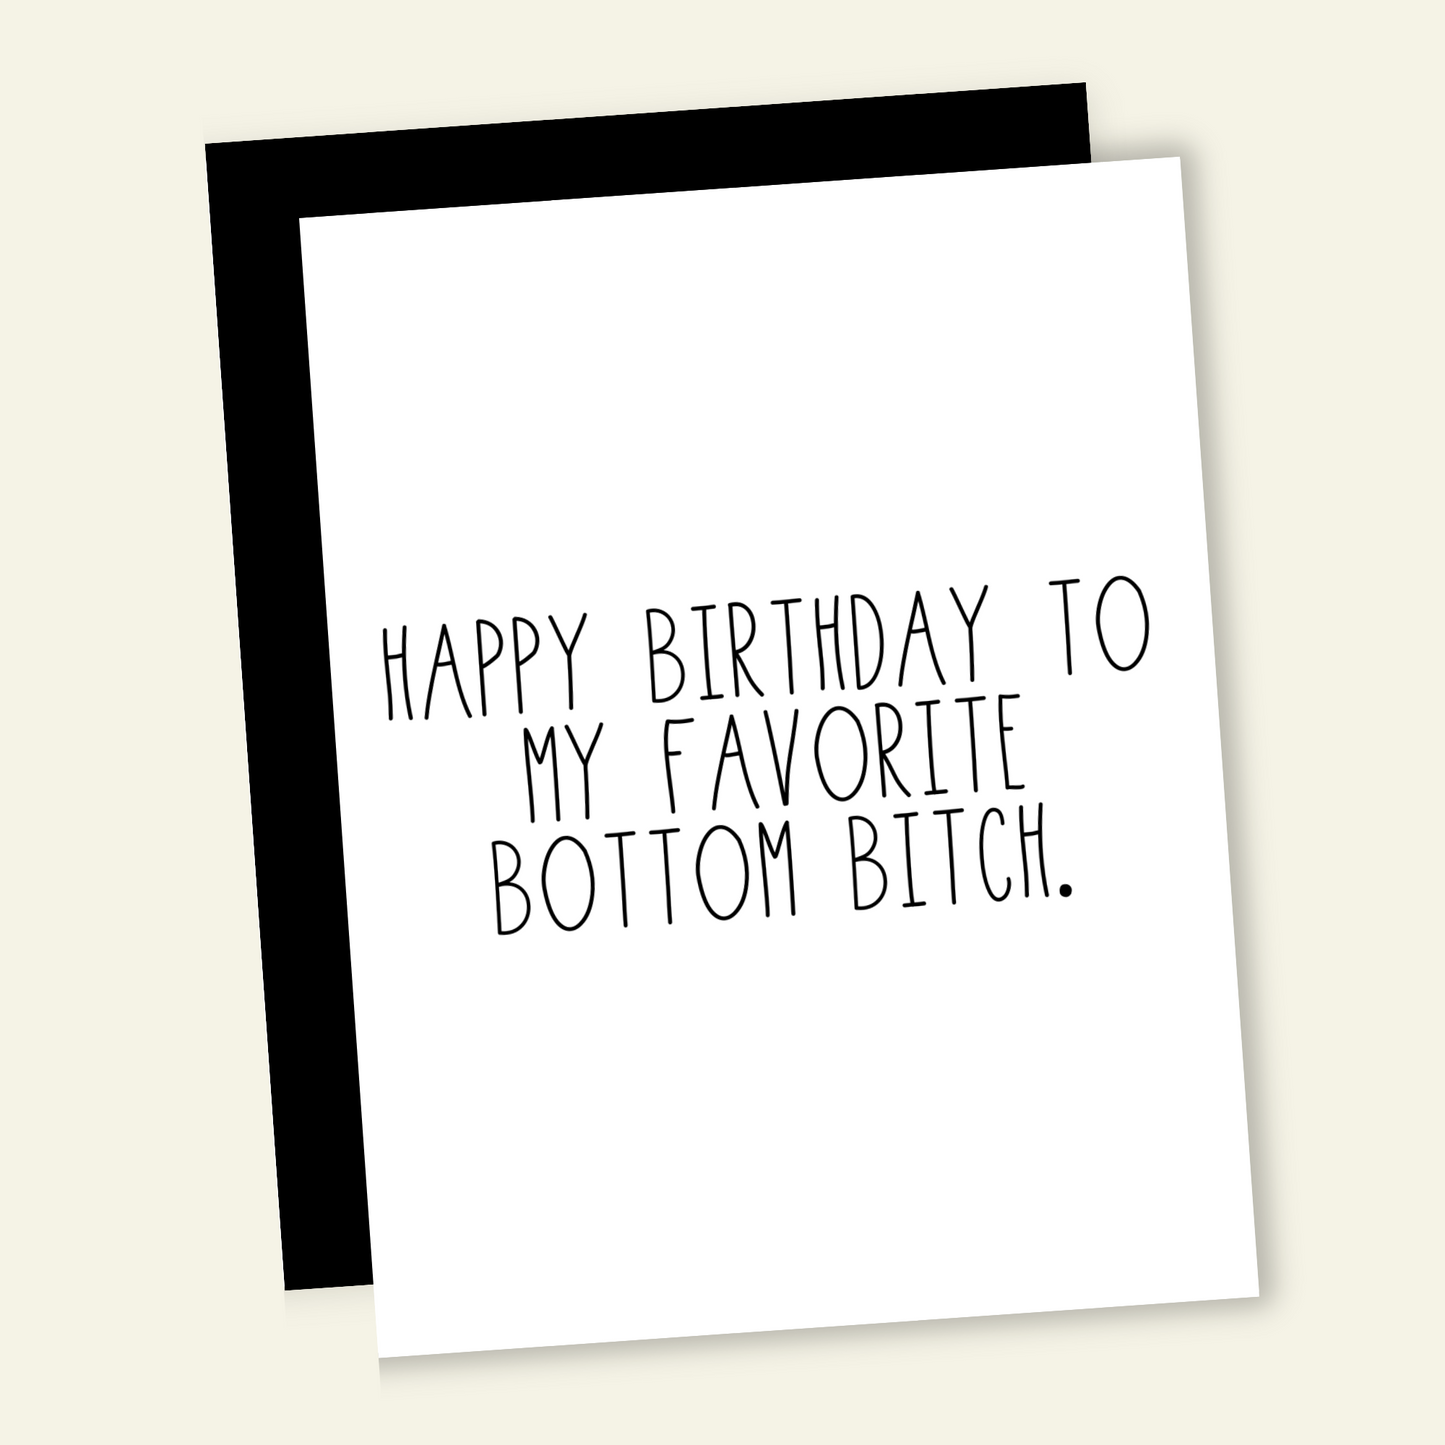 Happy Birthday to my Favorite Bottom B*tch